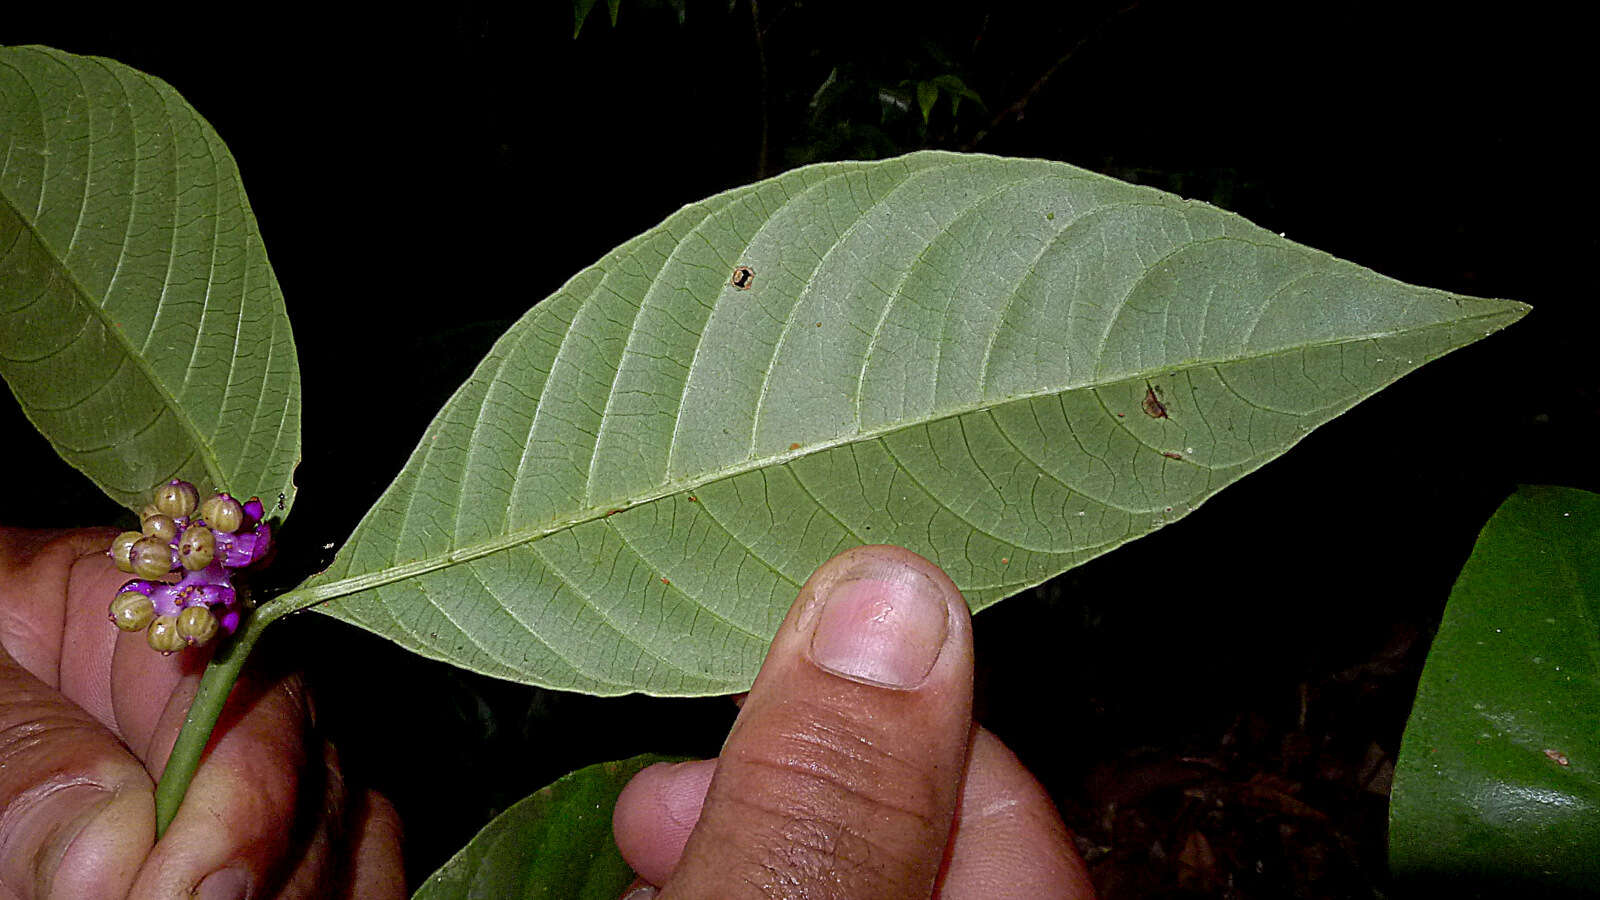 Plancia ëd Psychotria platypoda DC.